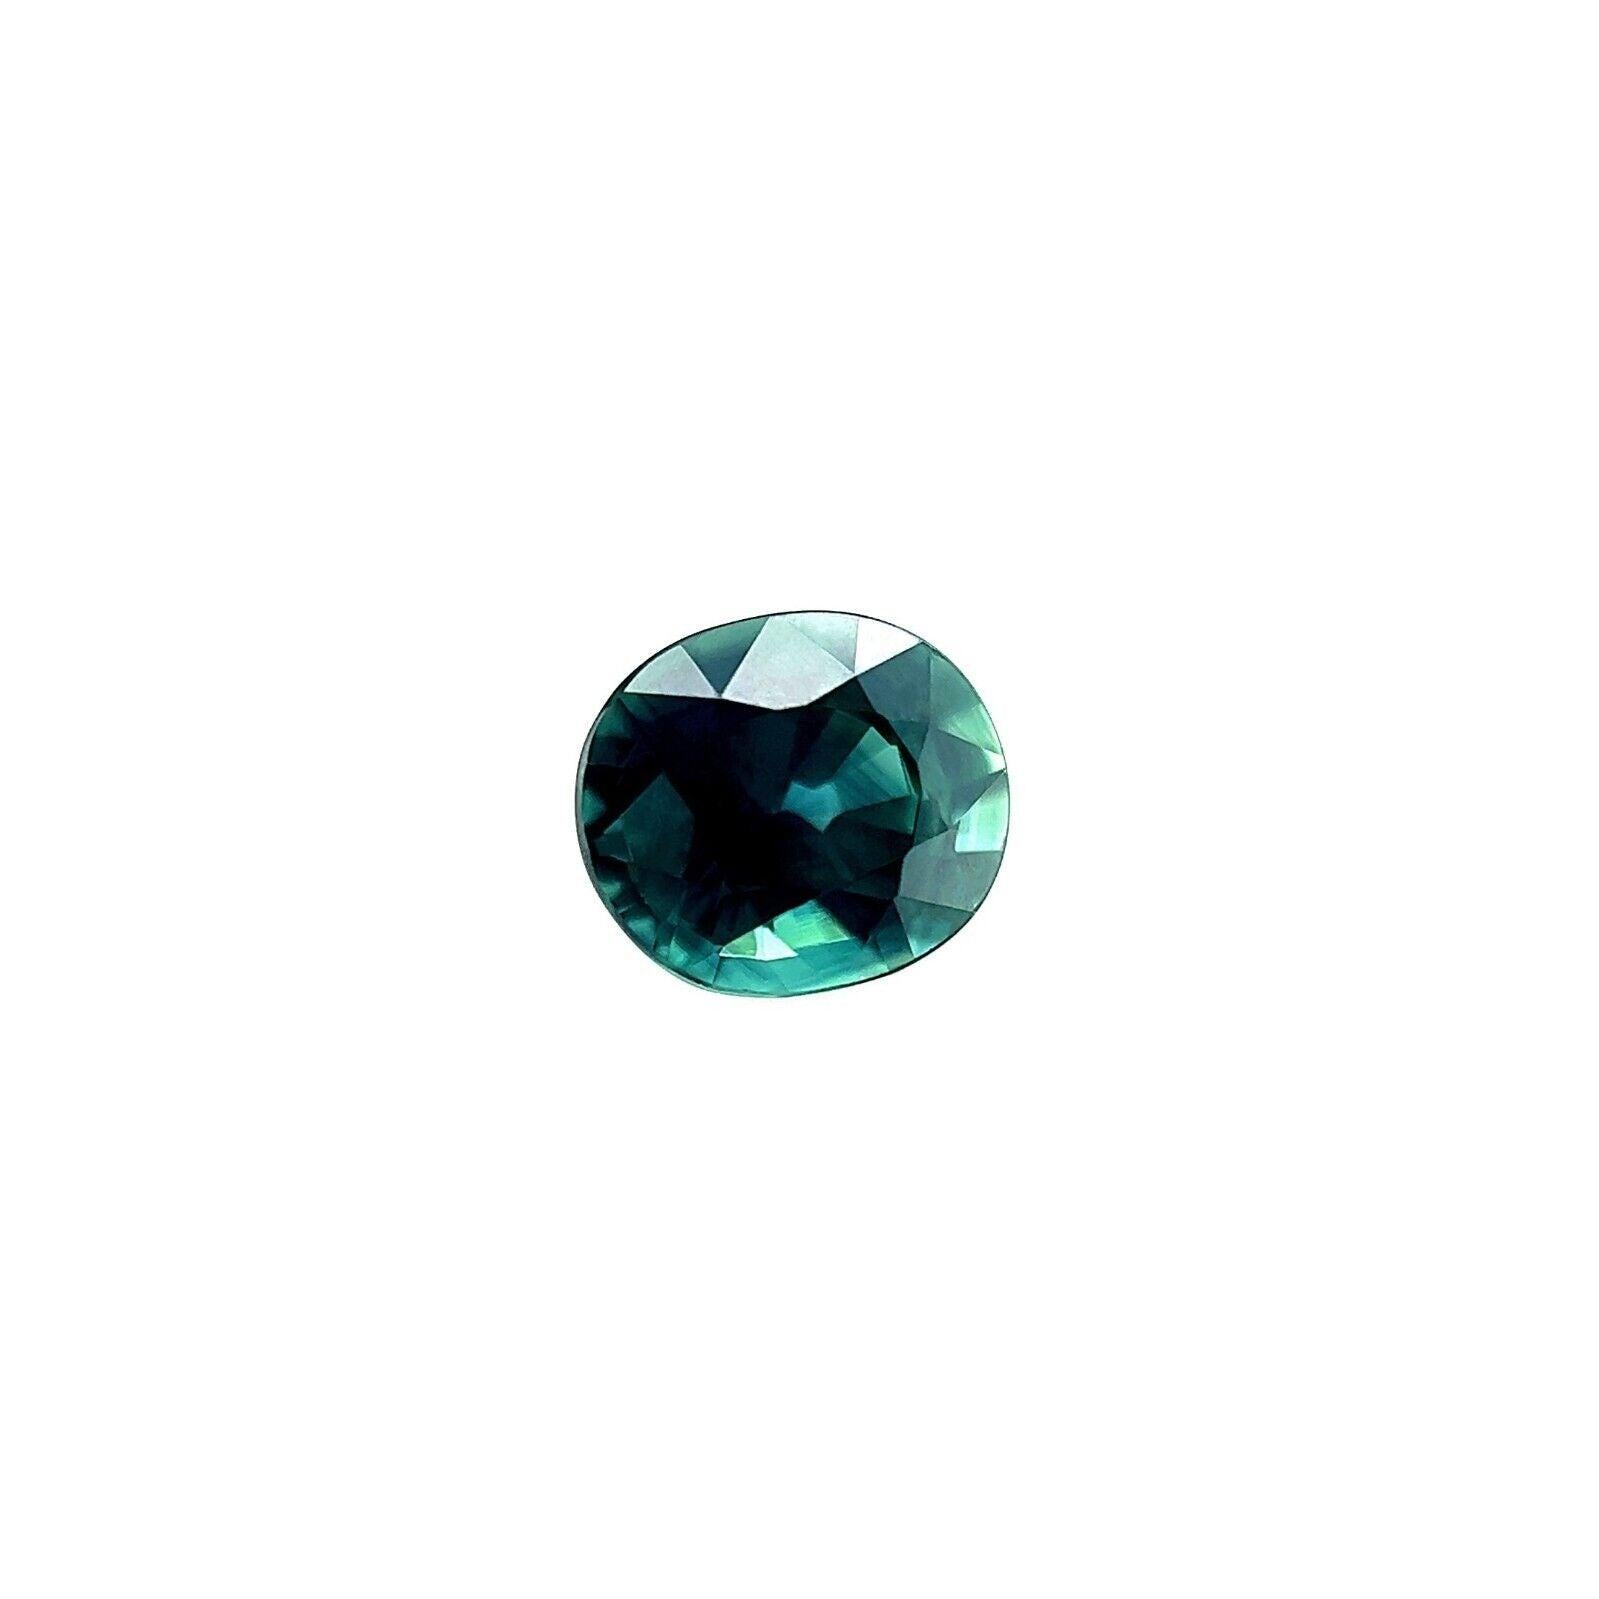 0.72ct Natürlicher Lebendiger Blauer Grüner Australischer Saphir Oval Schliff Edelstein 6x5.2mm VVS

Natürlicher australischer tiefblauer grüner Saphir Edelstein.
0,72 Karat mit einer schönen und einzigartigen tiefgrünblauen Farbe und